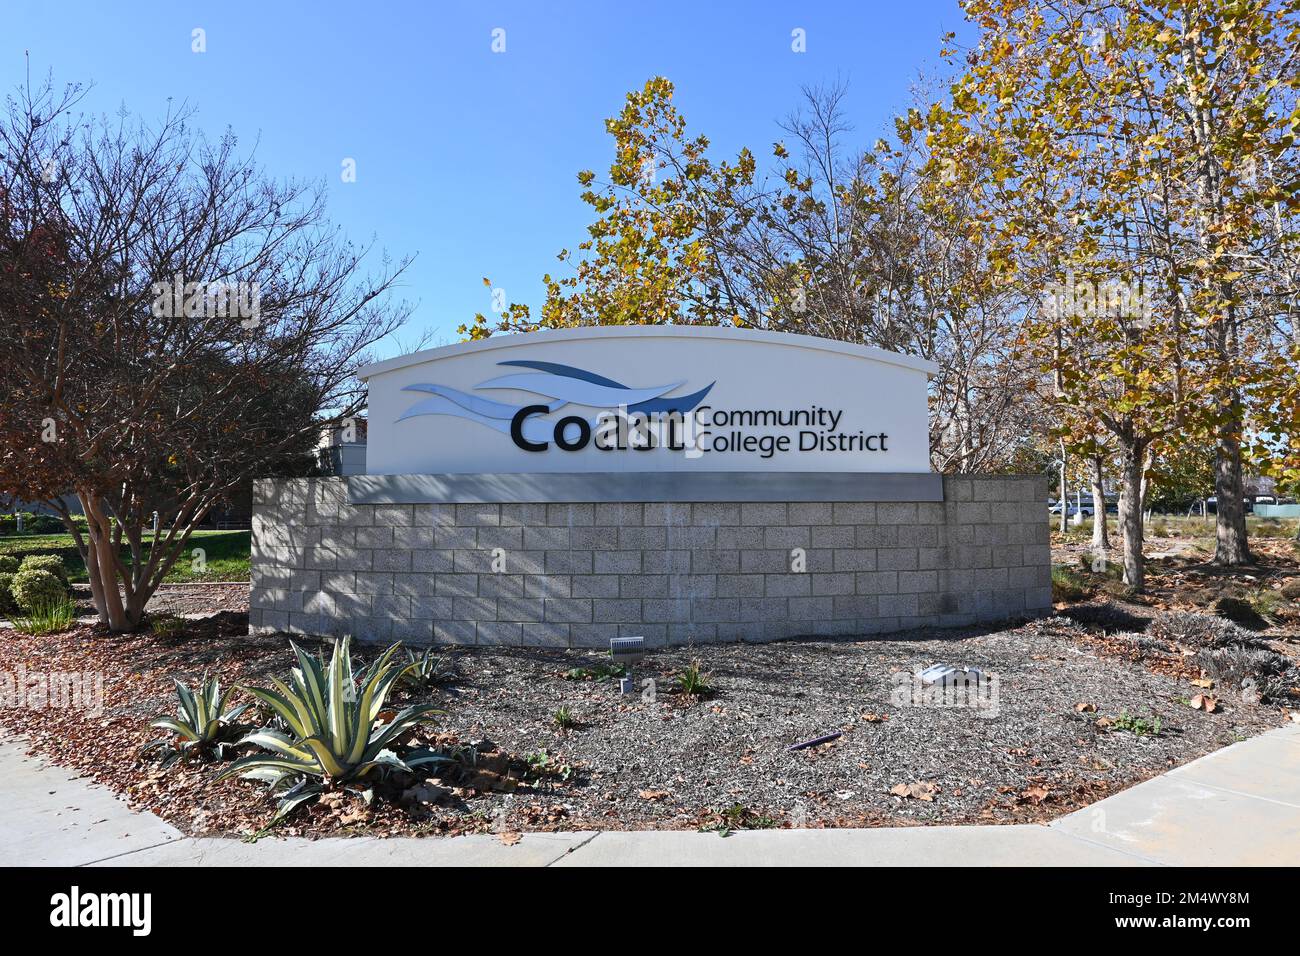 COSTA MESA, KALIFORNIEN - 19. DEZ. 2022: Unterschreiben Sie am Coast Community College District, einem Multi-College-Bezirk, zu dem auch das Coastline Community College, Go gehört Stockfoto